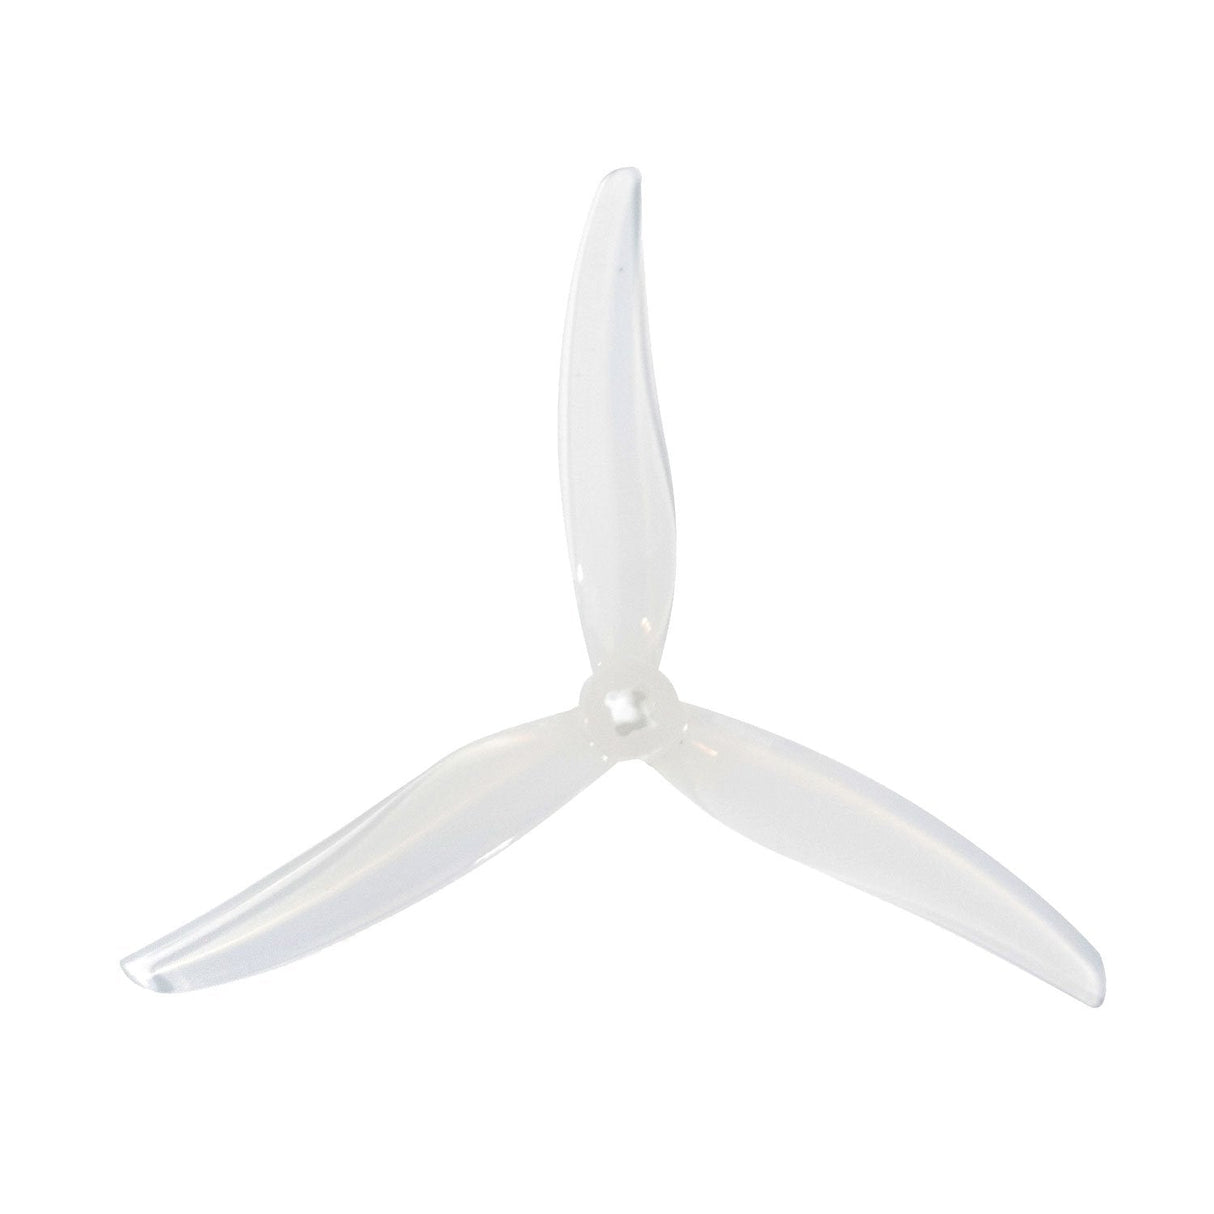 Gemfan 5130 Propeller (White) - DroneDynamics.ca